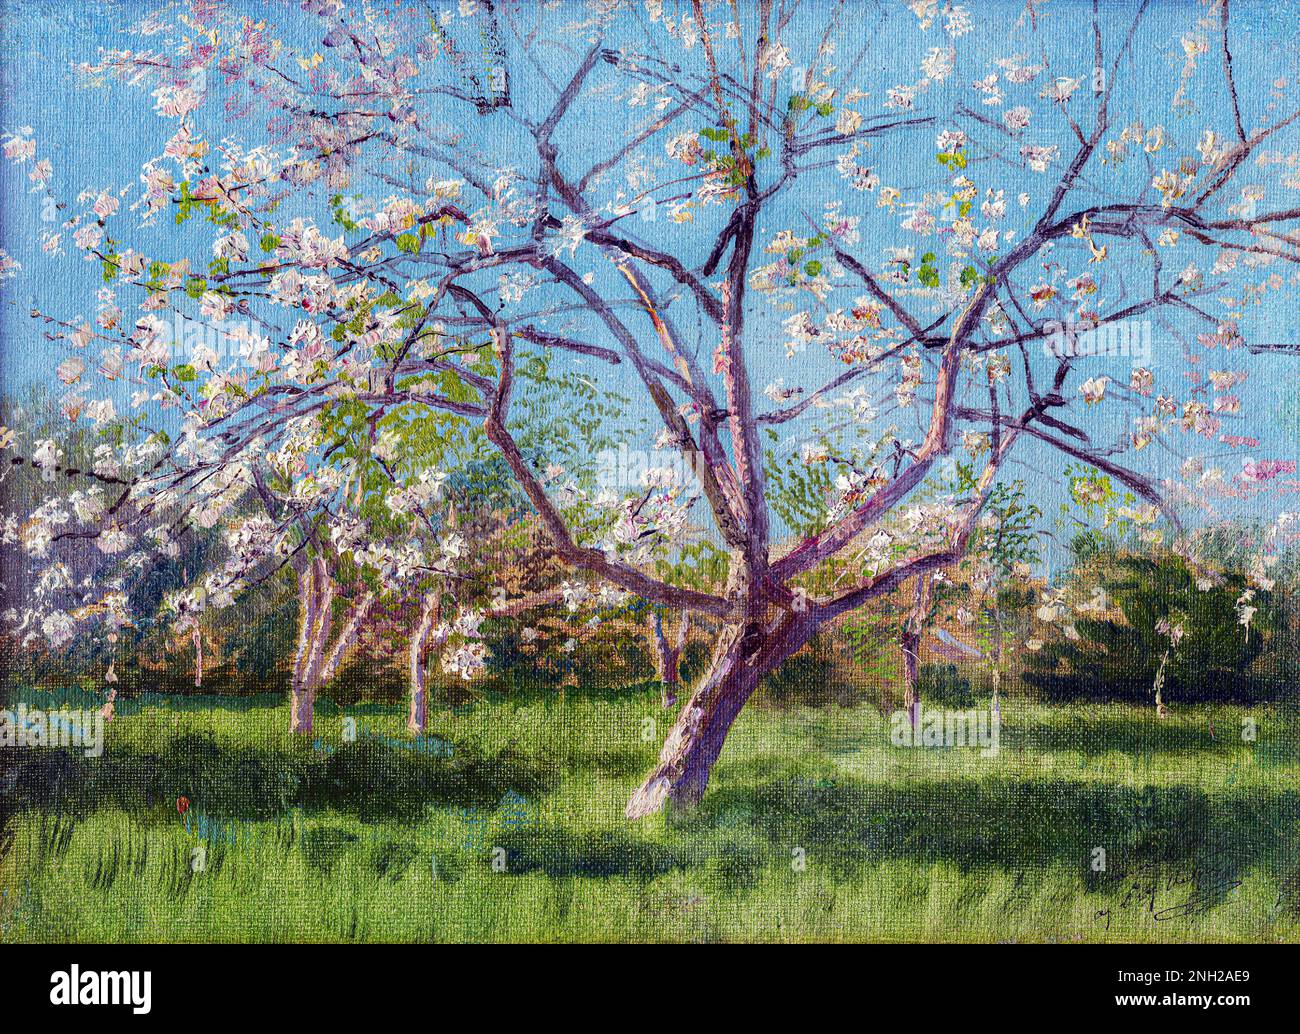 Studie über blühende Bäume in einem Obstgarten von László Mednyánszky Mehr: Original gemeinfreies Bild aus Web Umenia Stockfoto